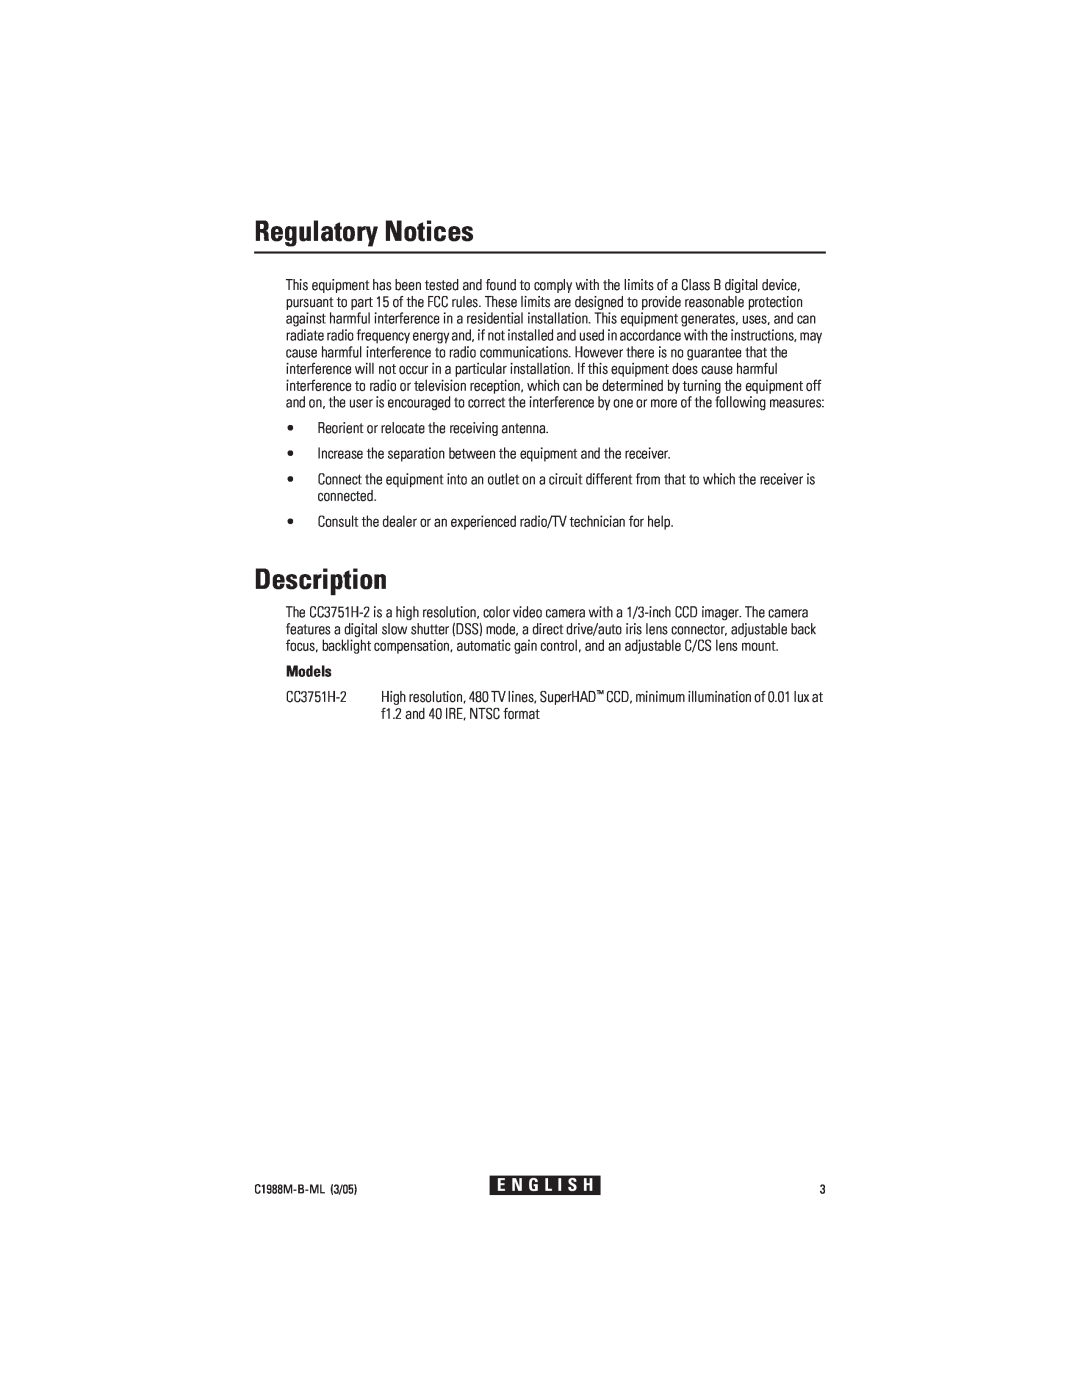 Pelco CC3751H-2 manual Regulatory Notices, Description, Models, E N G L I S H 